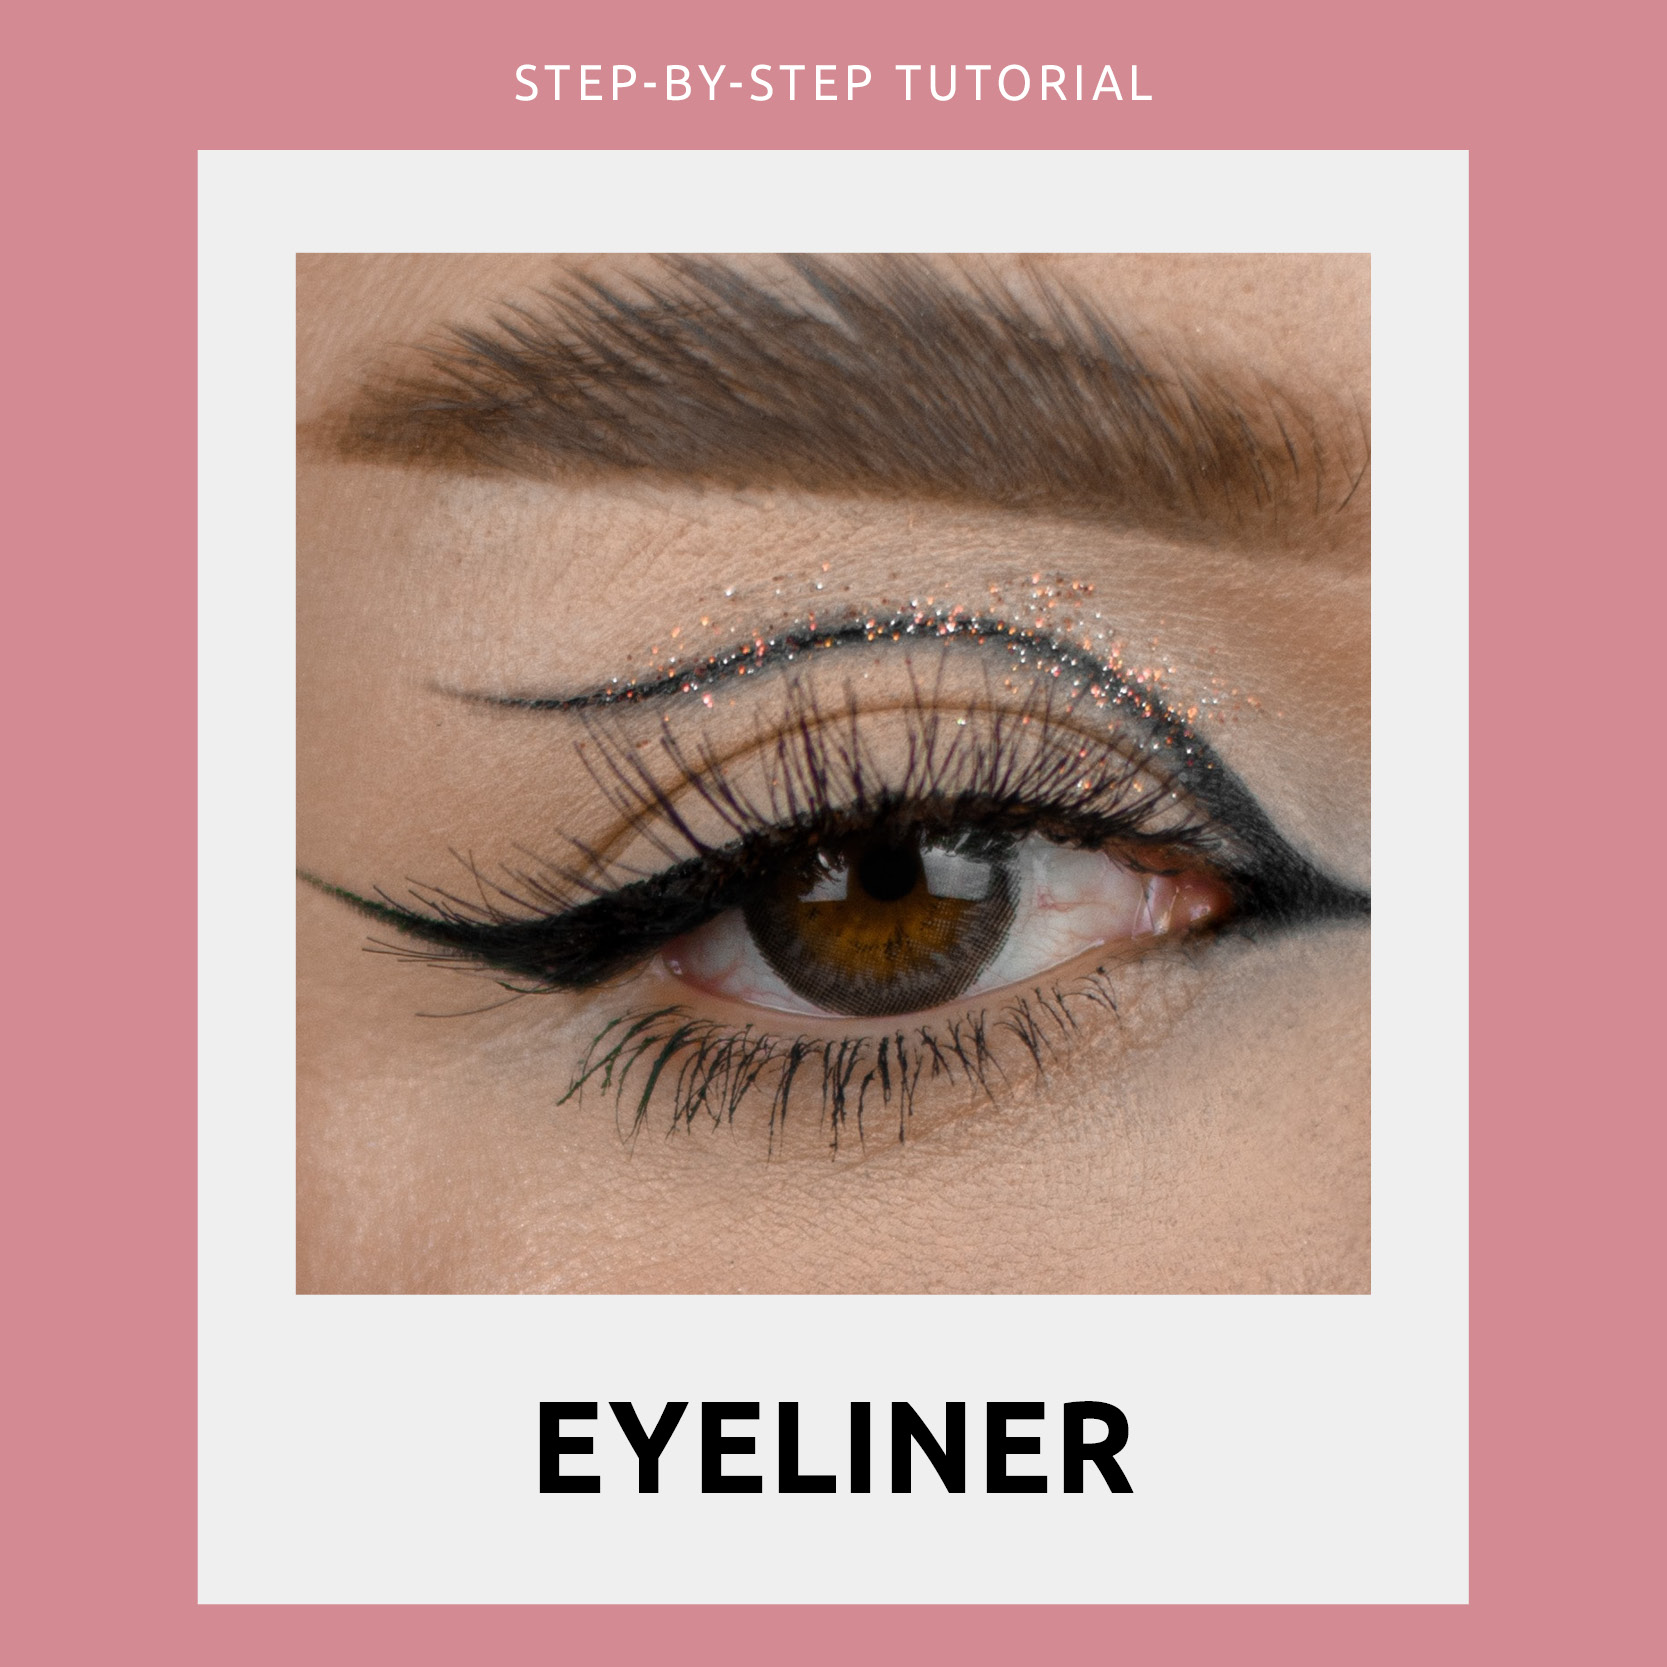 Wing Your Eyeliner - Eyeliner Guide